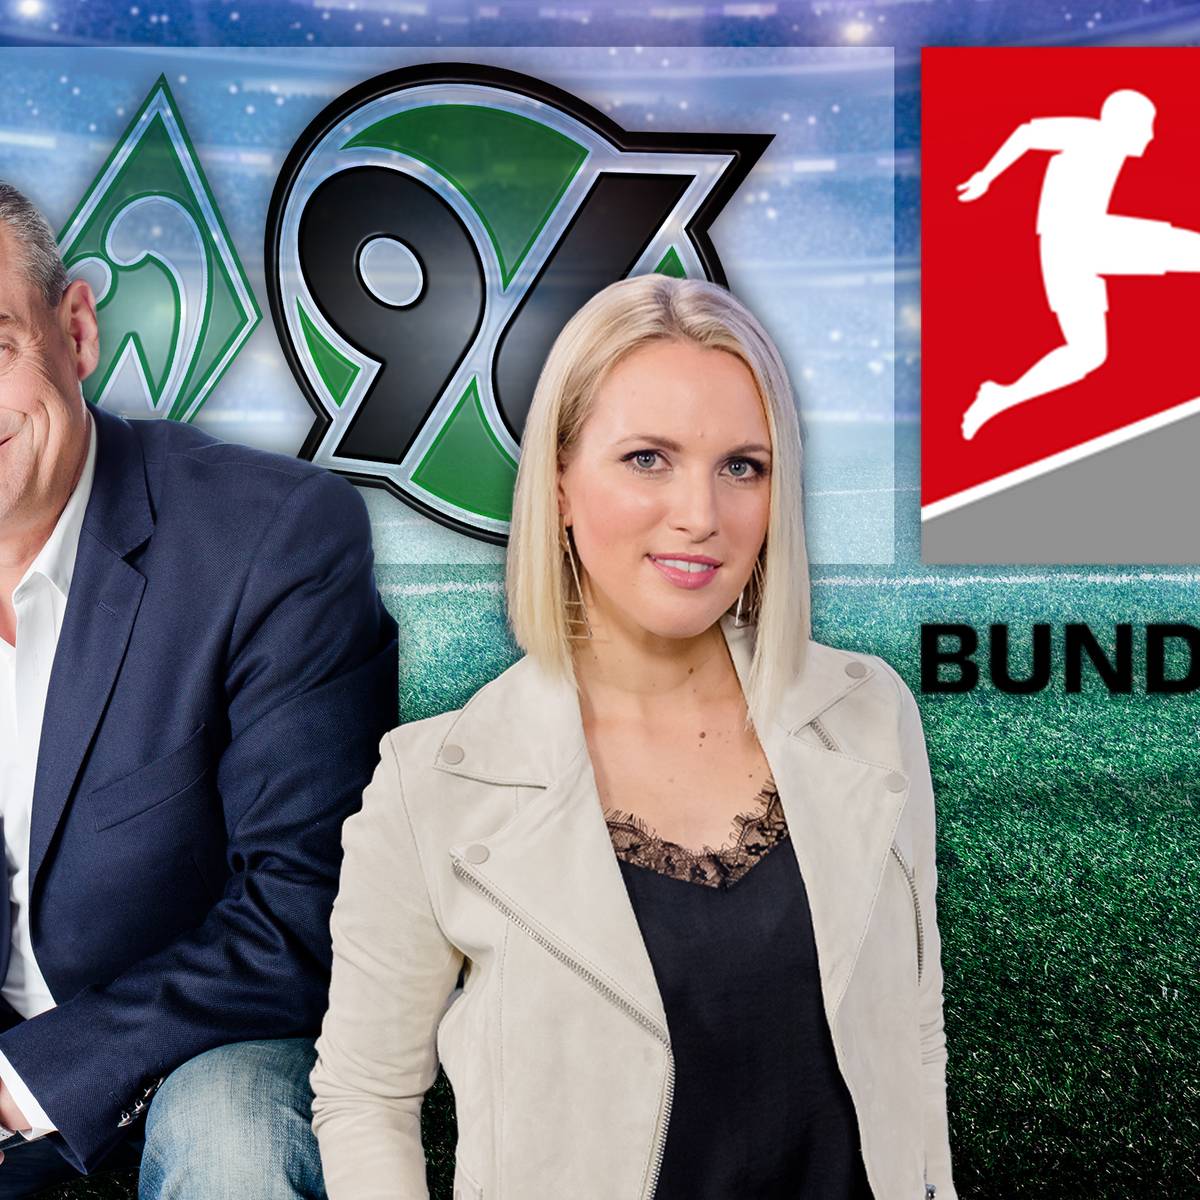 Starkes On-Air-Duo für das neue Topspiel am Samstagabend im Free-TV SPORT1 startet mit Ruth Hofmann und Markus Höhner am Mikrofon in die Saison der 2